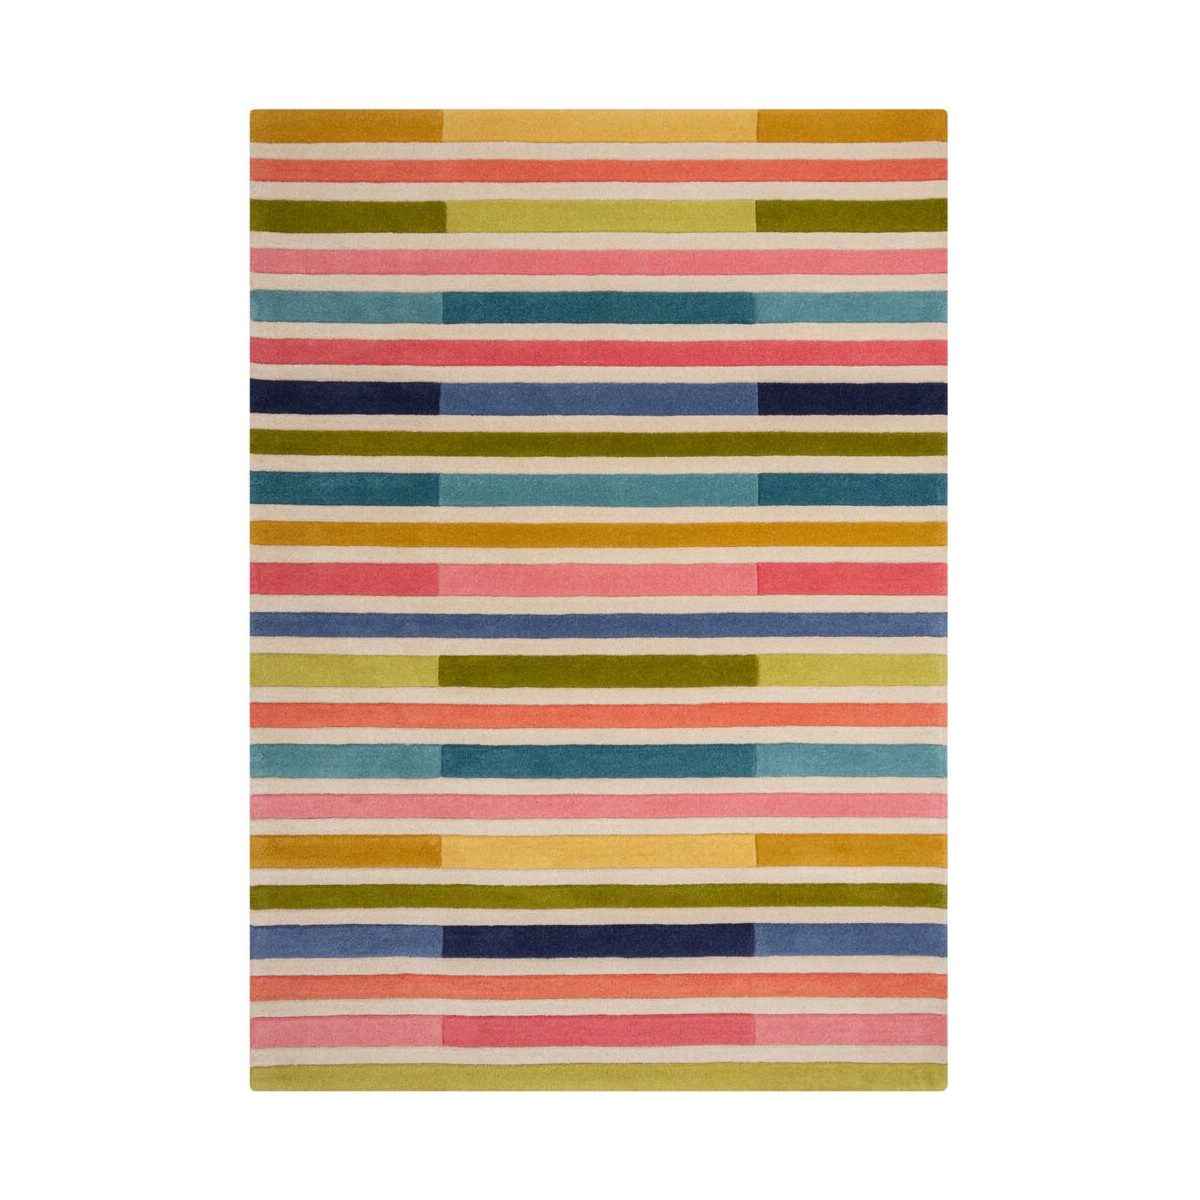 Ručně všívaný kusový koberec Illusion Piano Pink/Multi